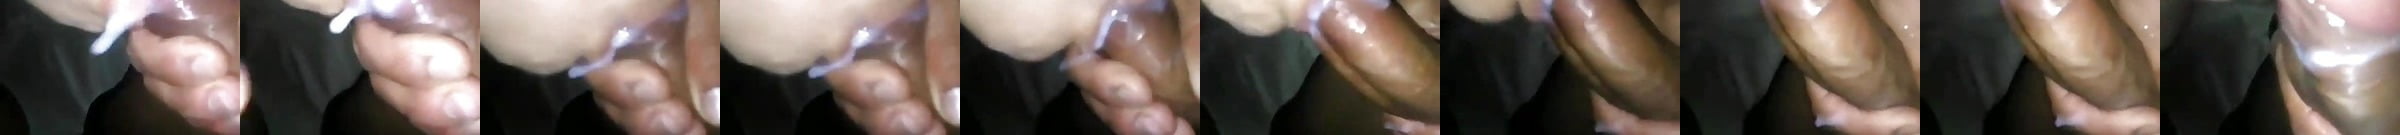 Cum In Girls Mouth Porn Videos Xhamster